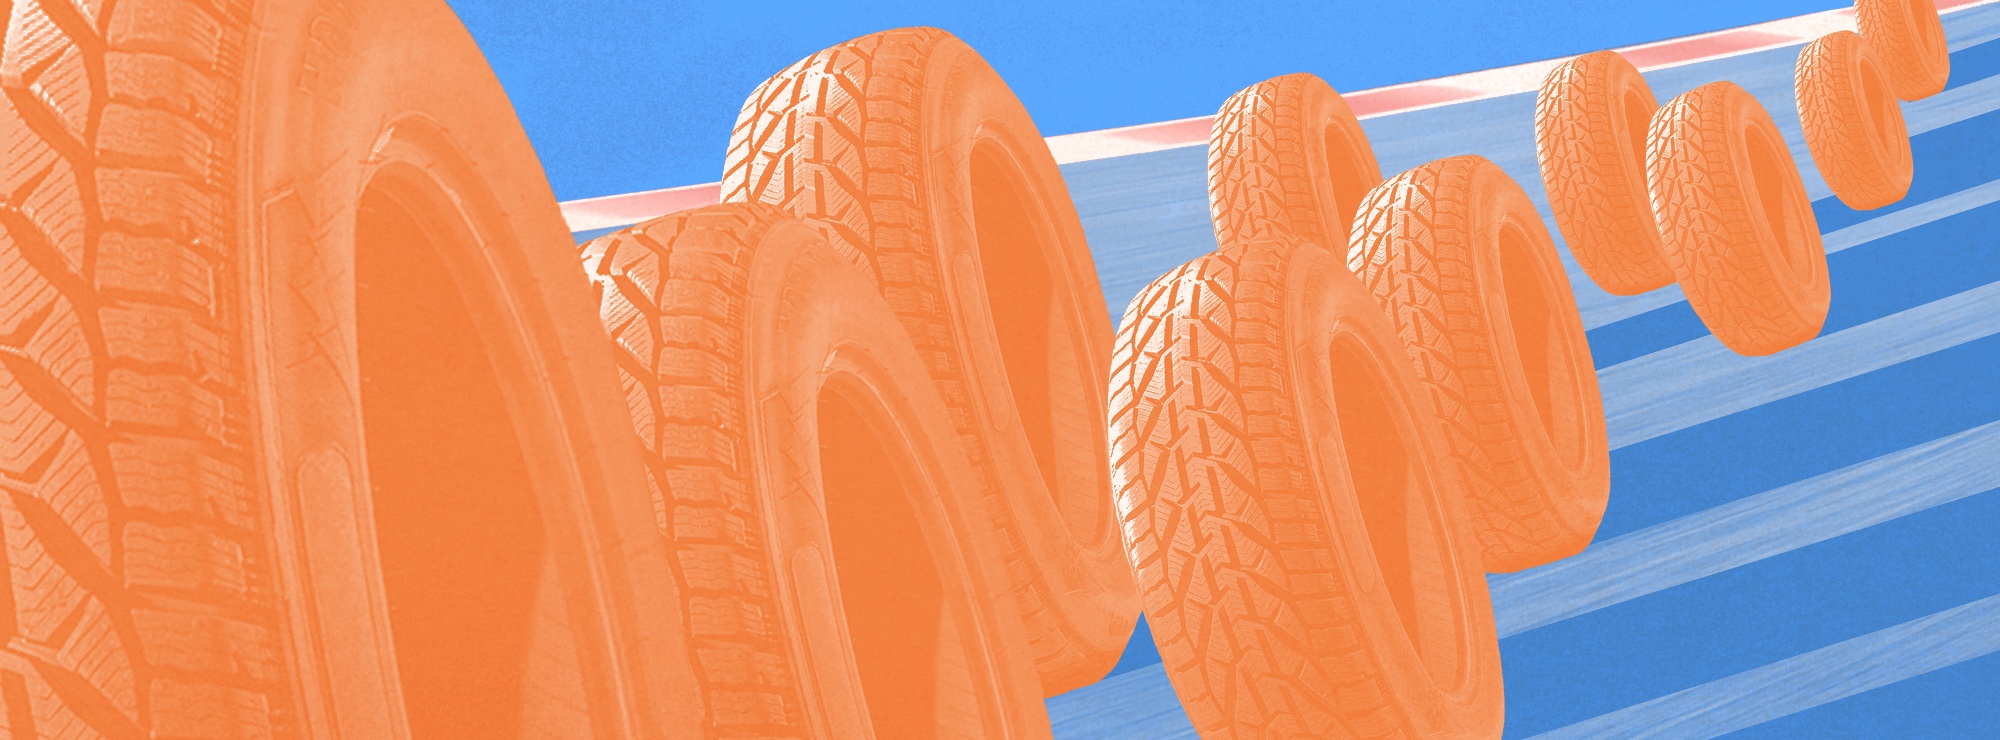 Полноразмерная обложка поста на тему: Как выбрать производителя шин: отзывы автомобилистов